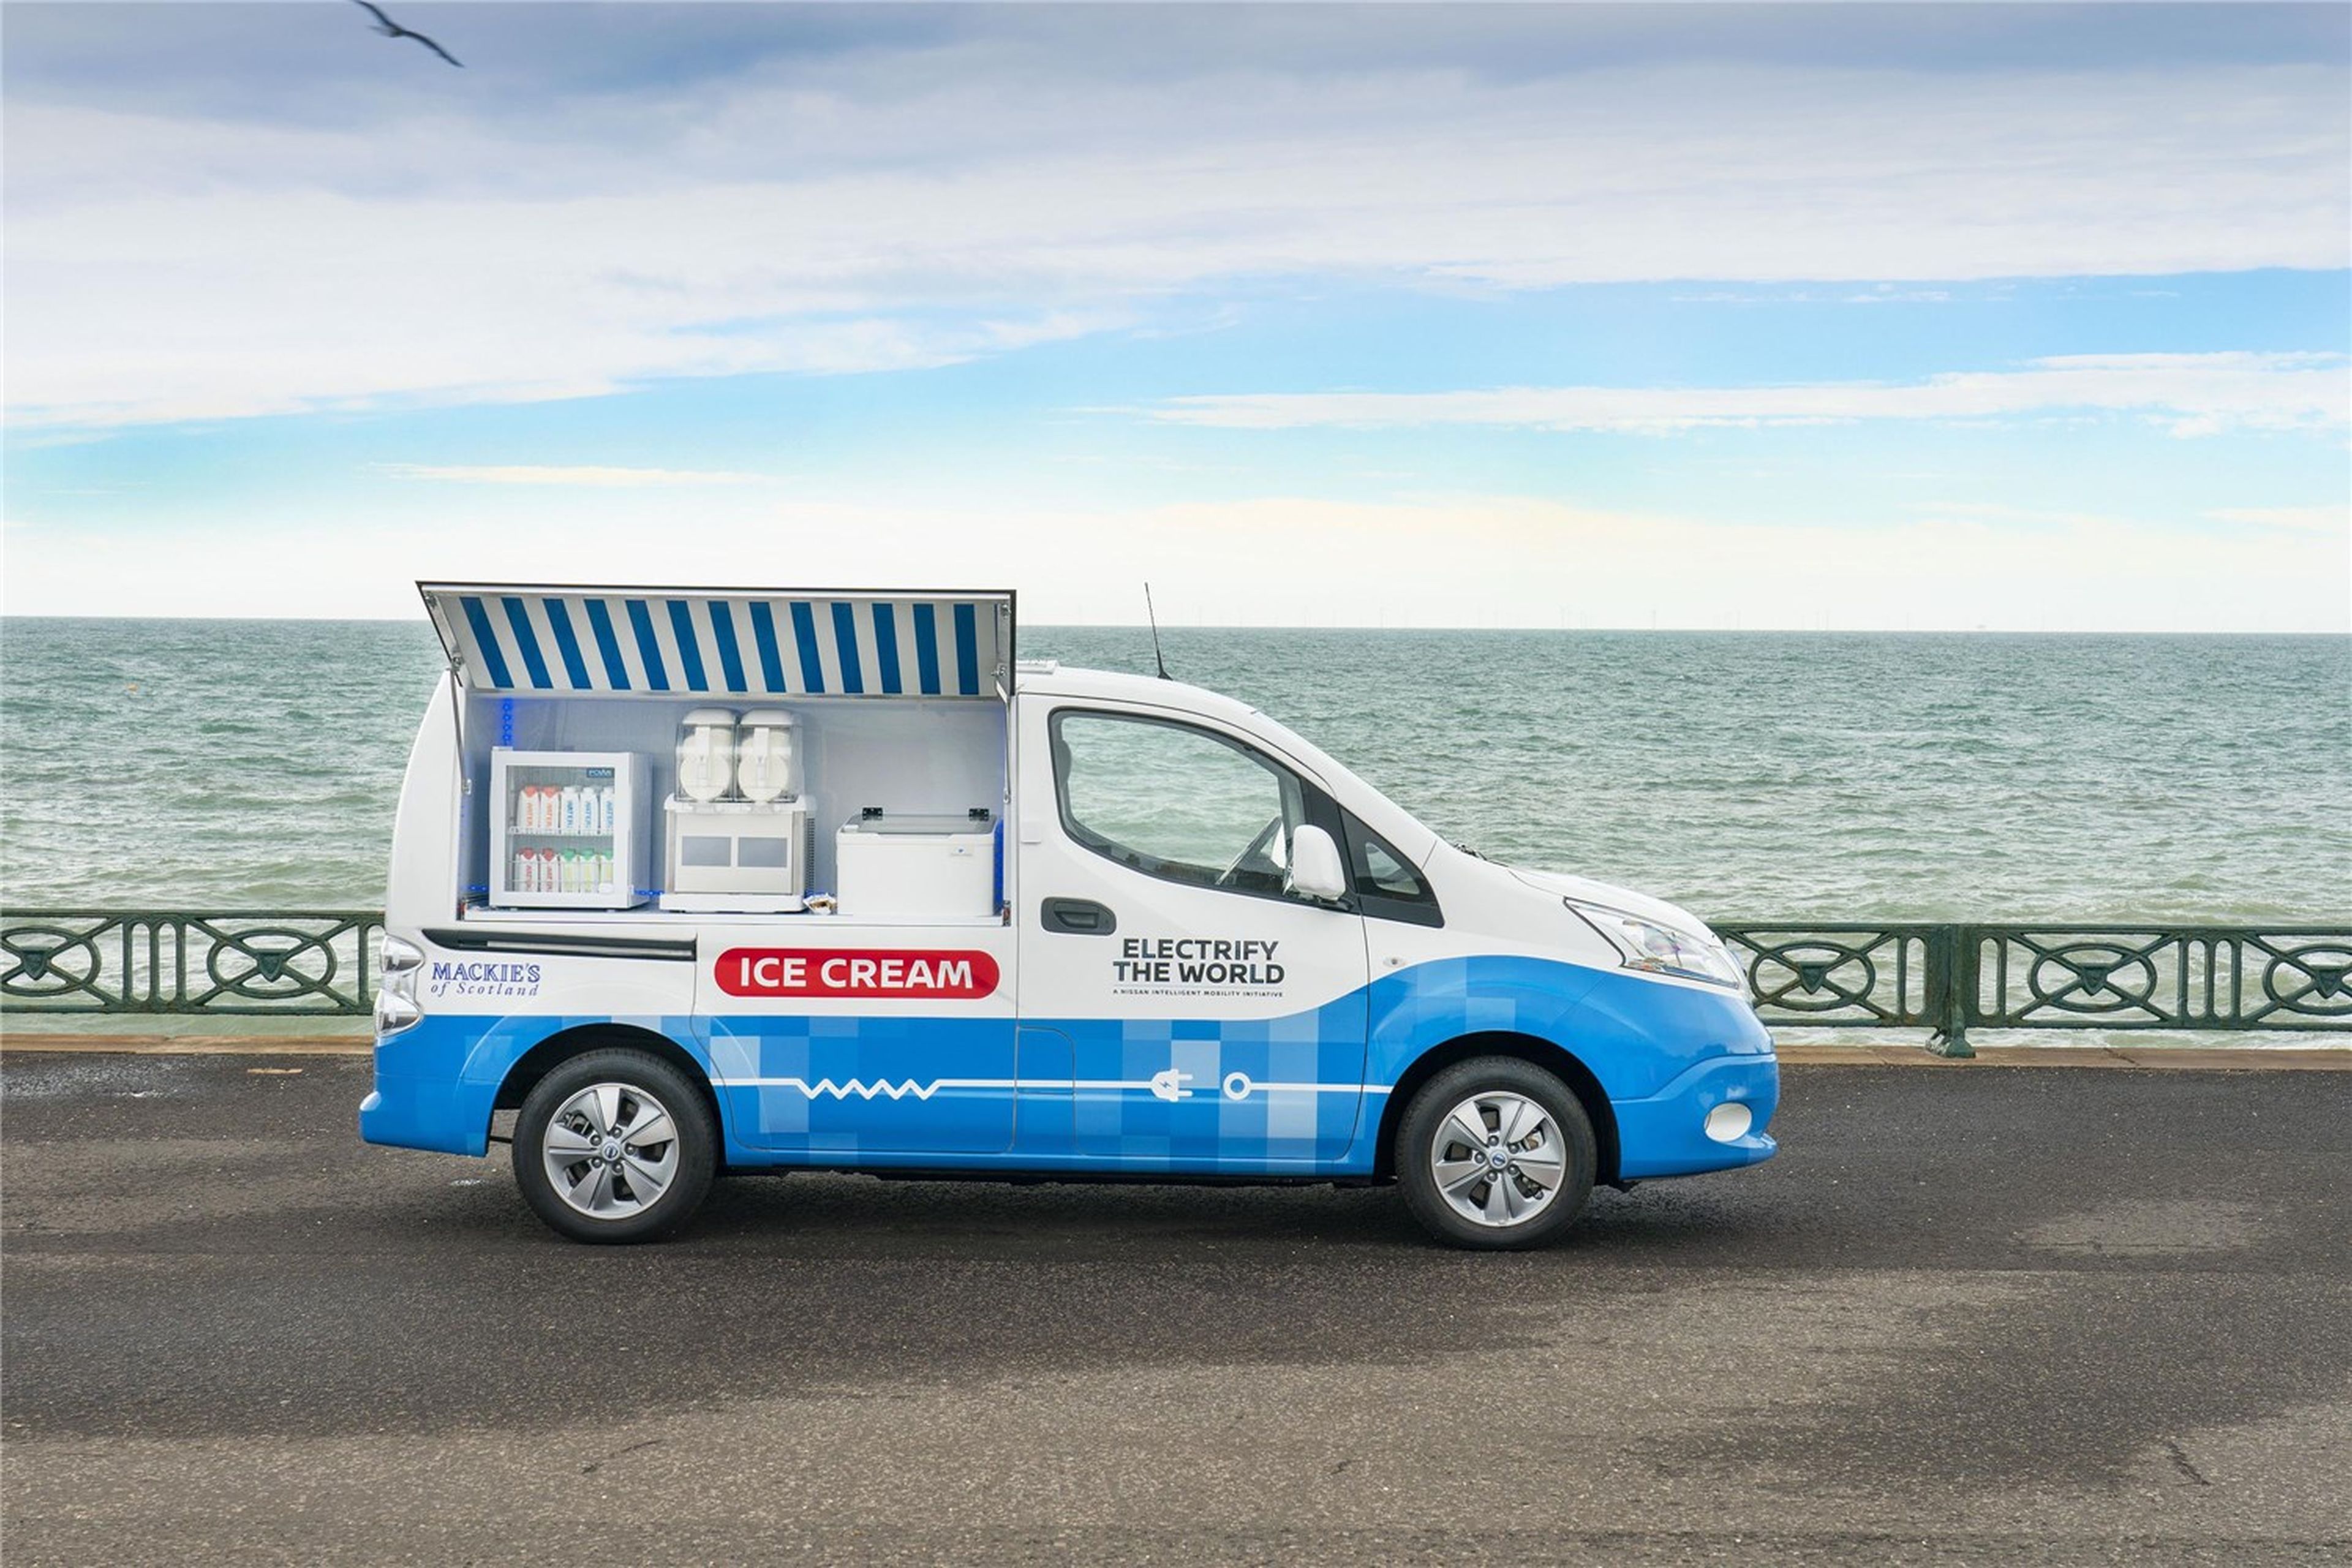 Nissan crea una furgoneta de reparto de helado cero emisiones